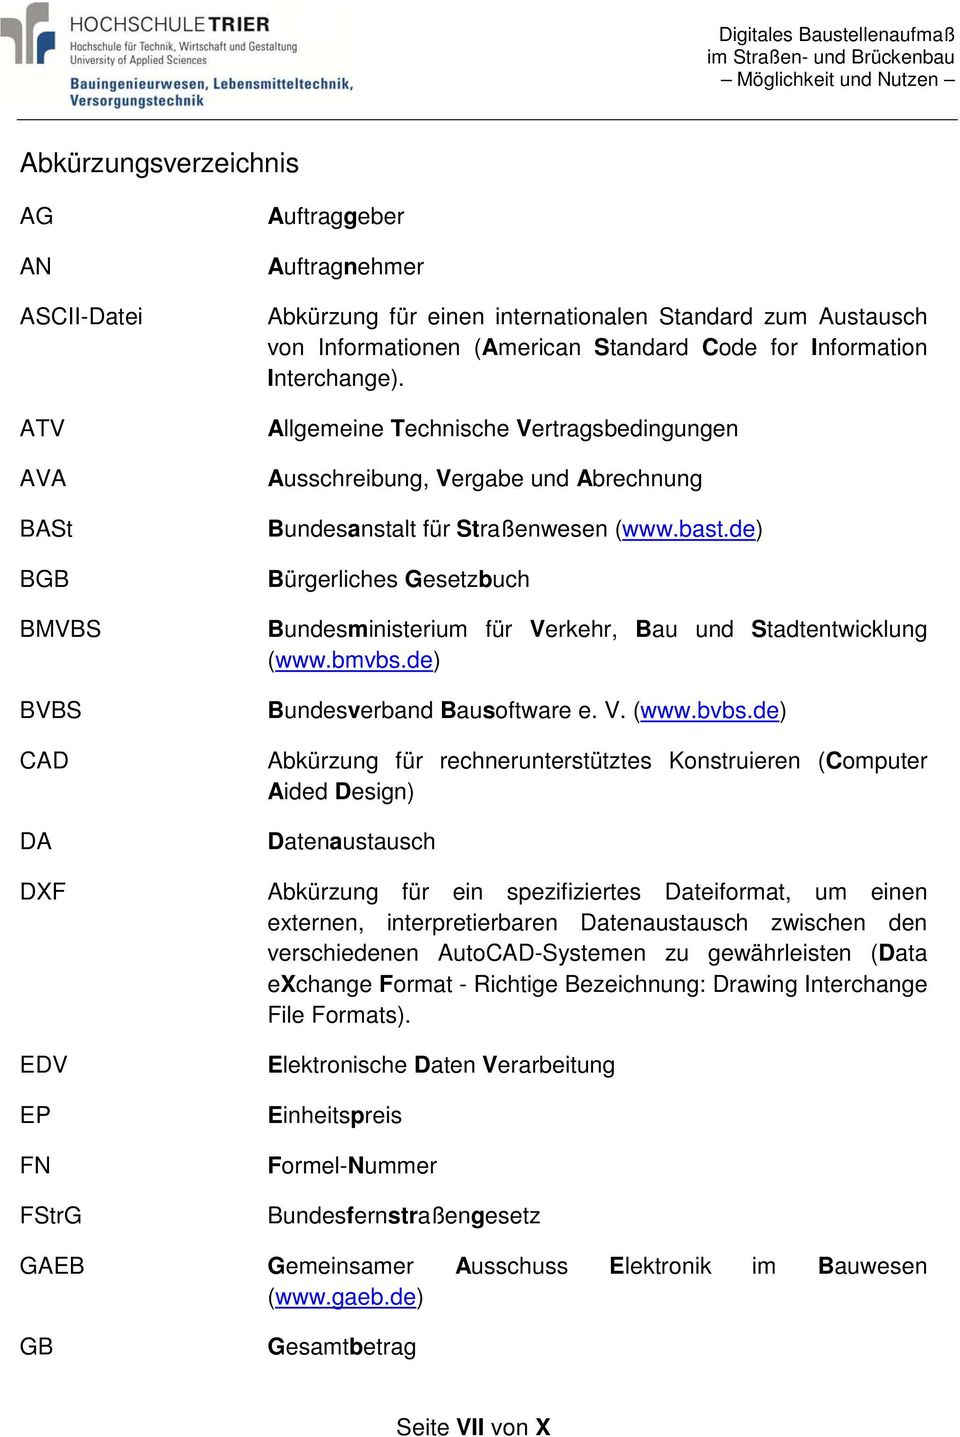 de) Bürgerliches Gesetzbuch Bundesministerium für Verkehr, Bau und Stadtentwicklung (www.bmvbs.de) Bundesverband Bausoftware e. V. (www.bvbs.